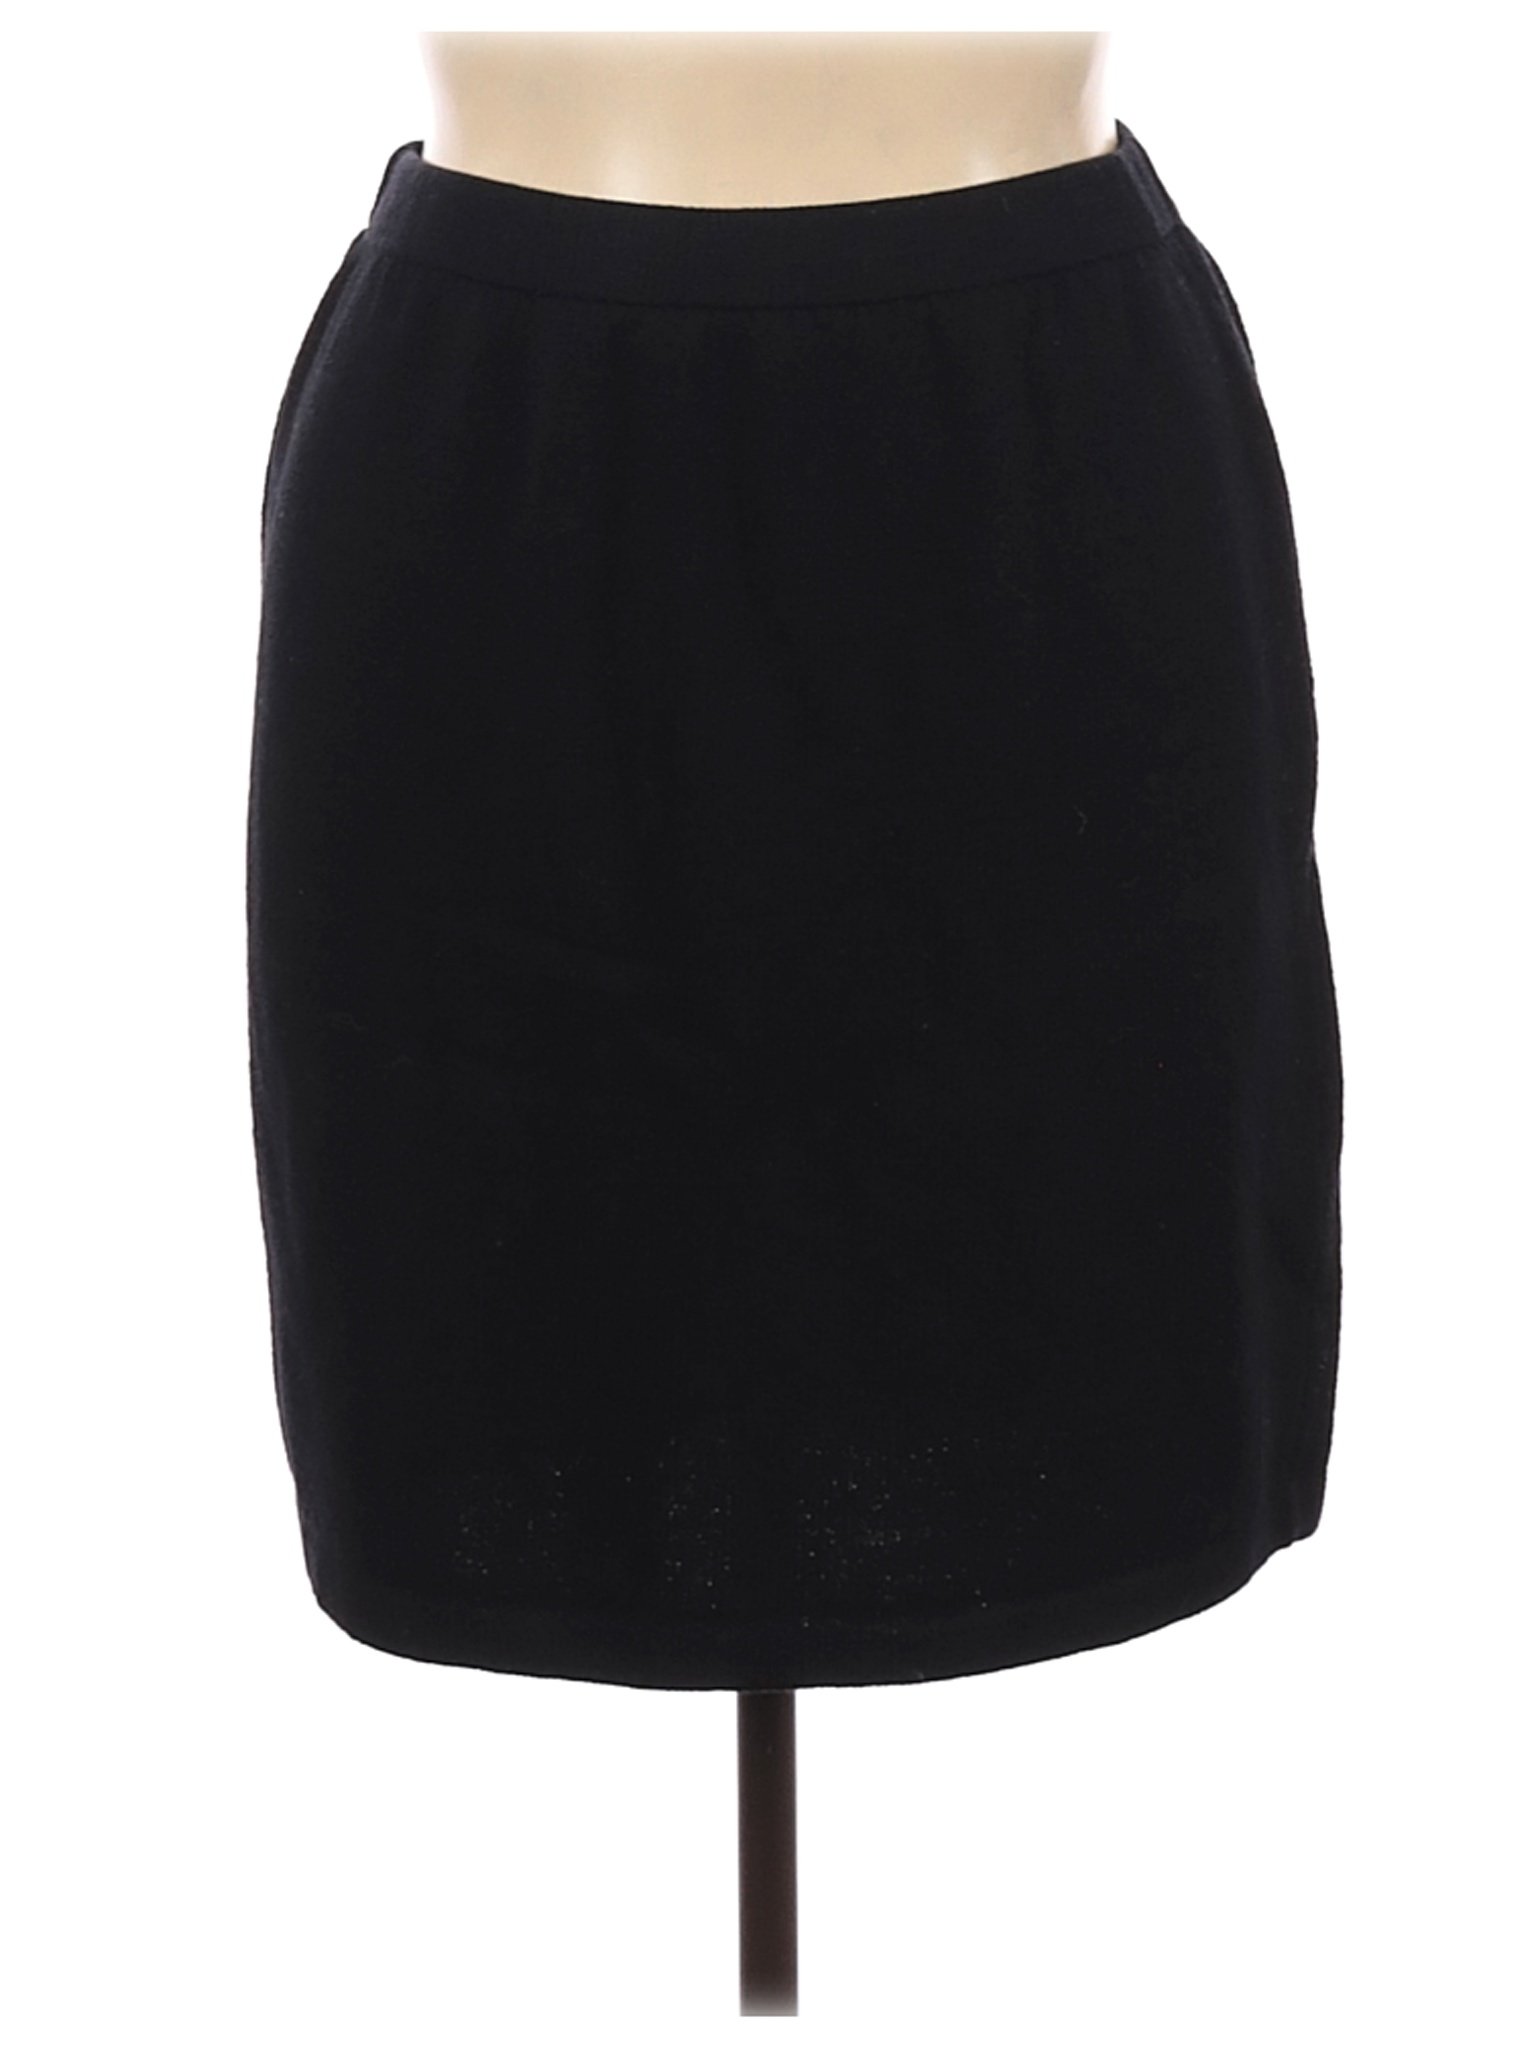 St. John Basics Women Black Casual Skirt 14 | eBay